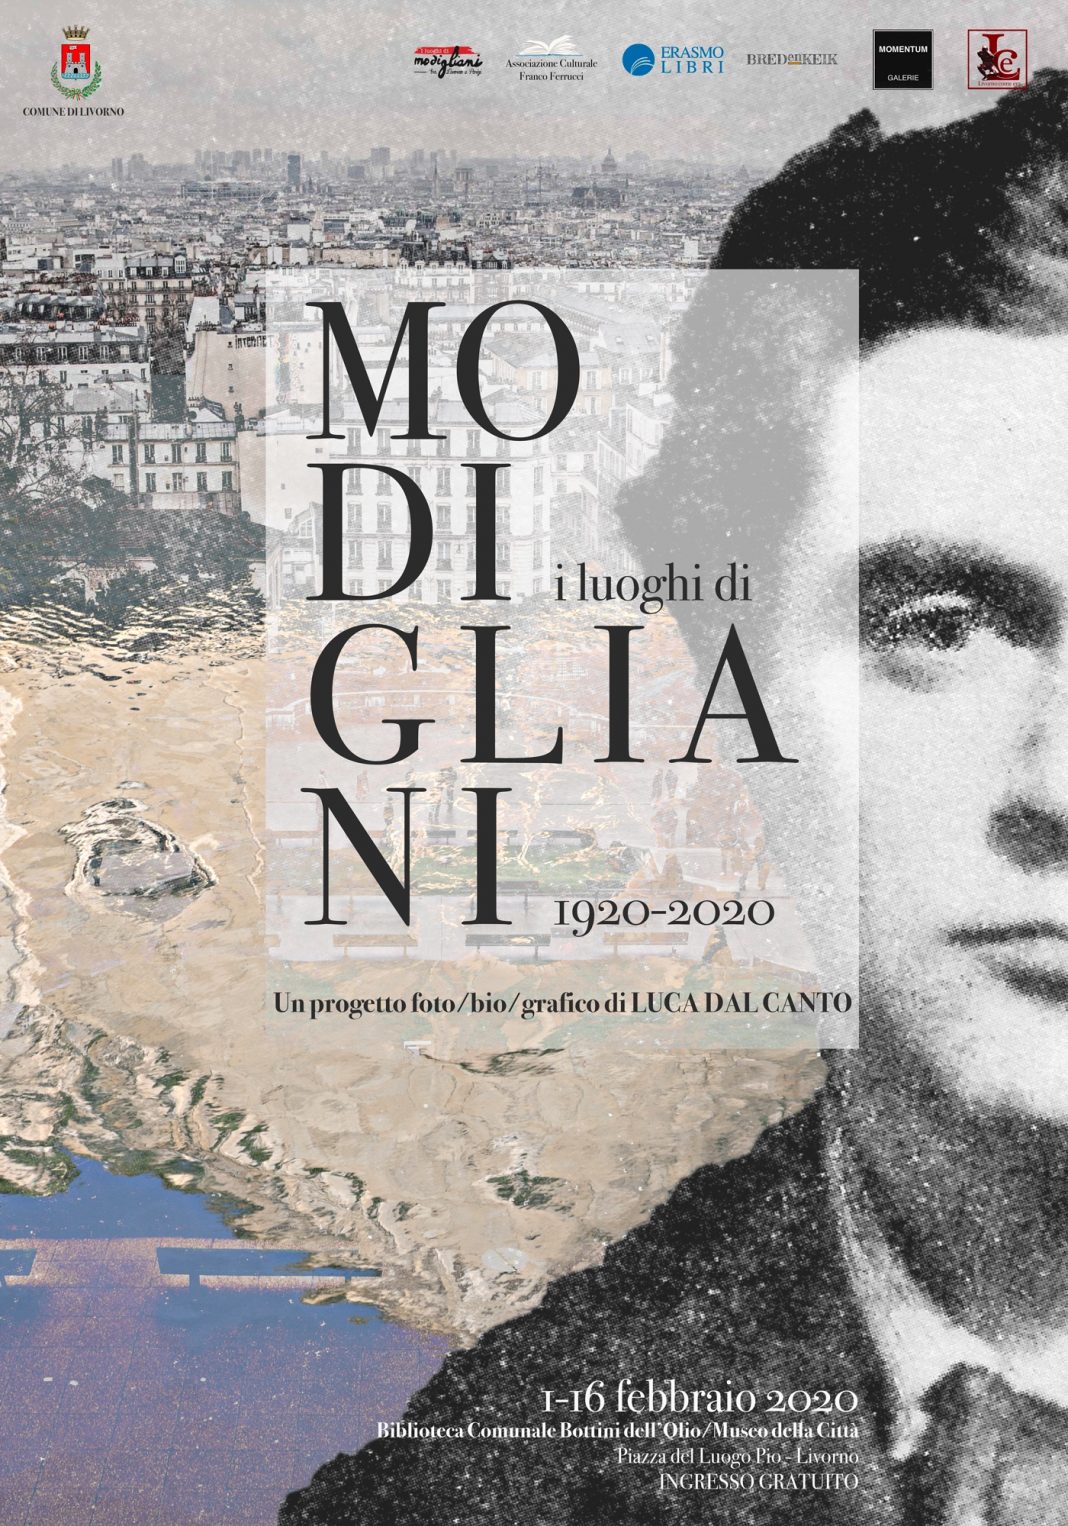 Luca Dal Canto – I luoghi di Modigliani tra Livorno e Parigihttps://www.exibart.com/repository/media/formidable/11/manifesto-mostra-Livorno-2020-compresso-1068x1526.jpg